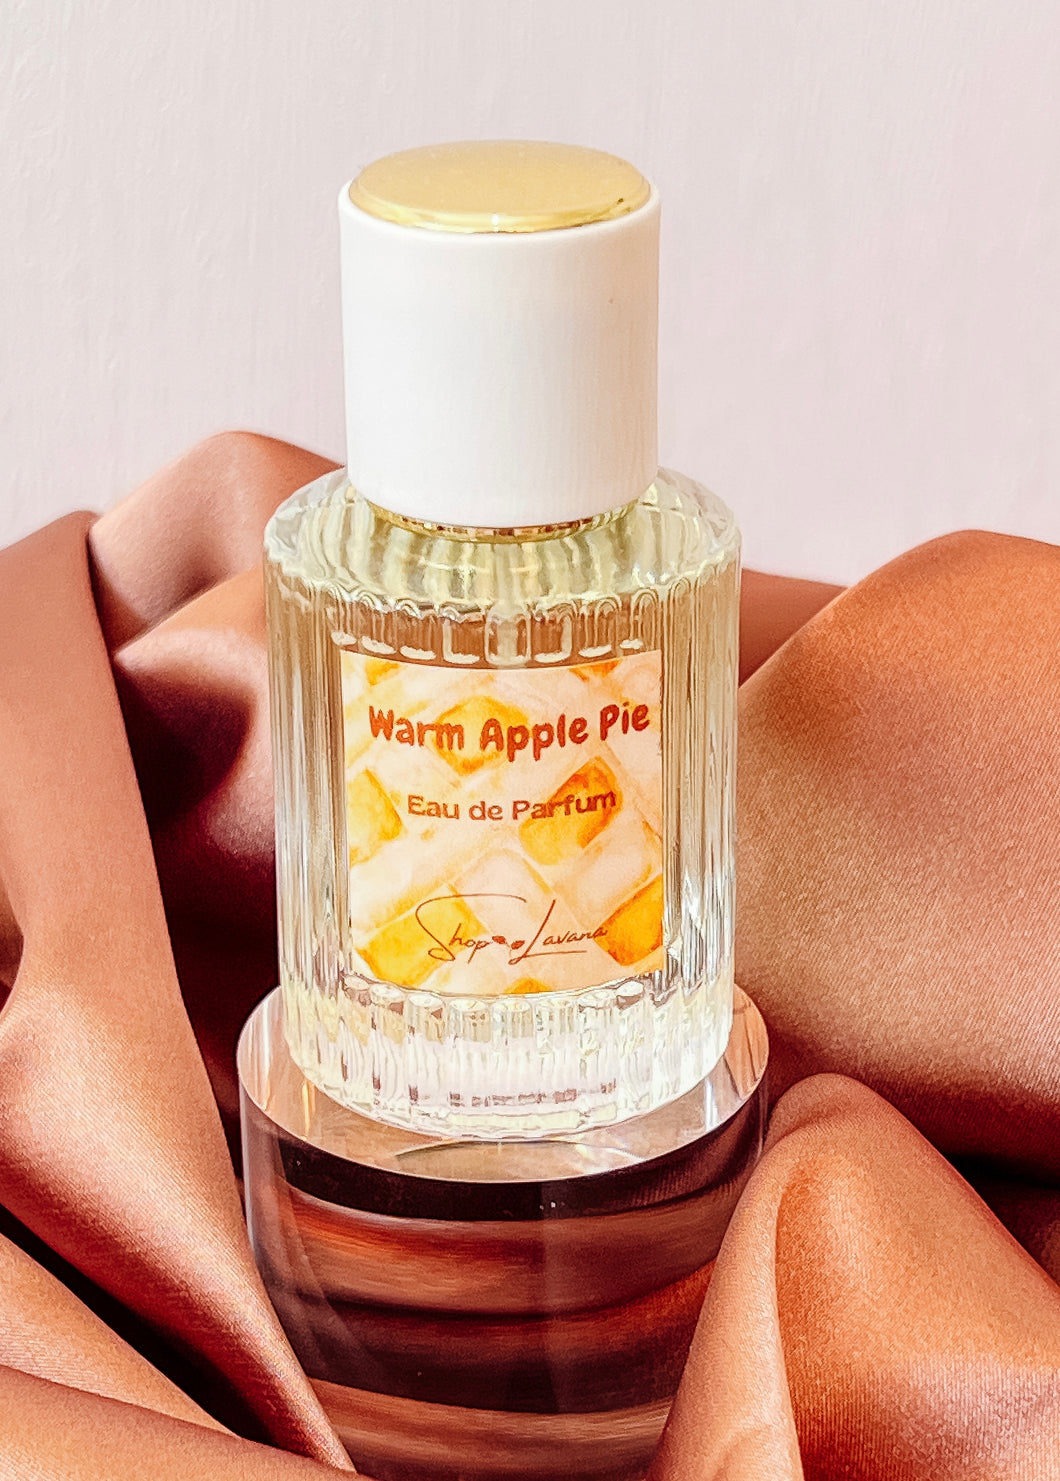 All New! Warm Apple Pie Eau de Parfum